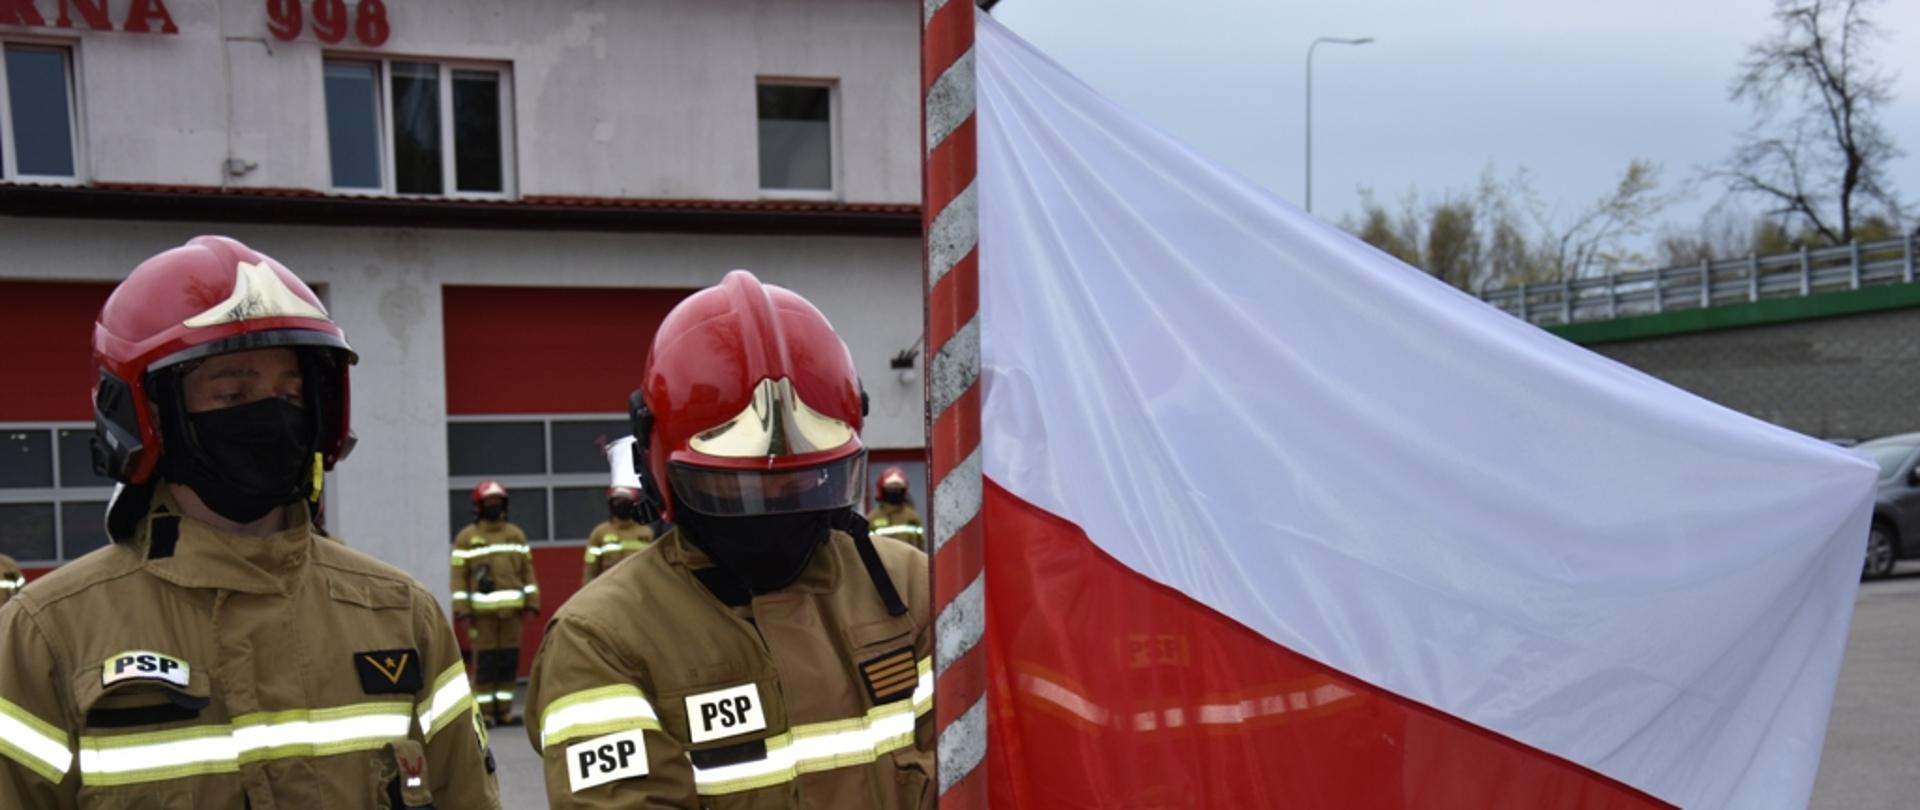 Strażacy przypinają flagę do masztu